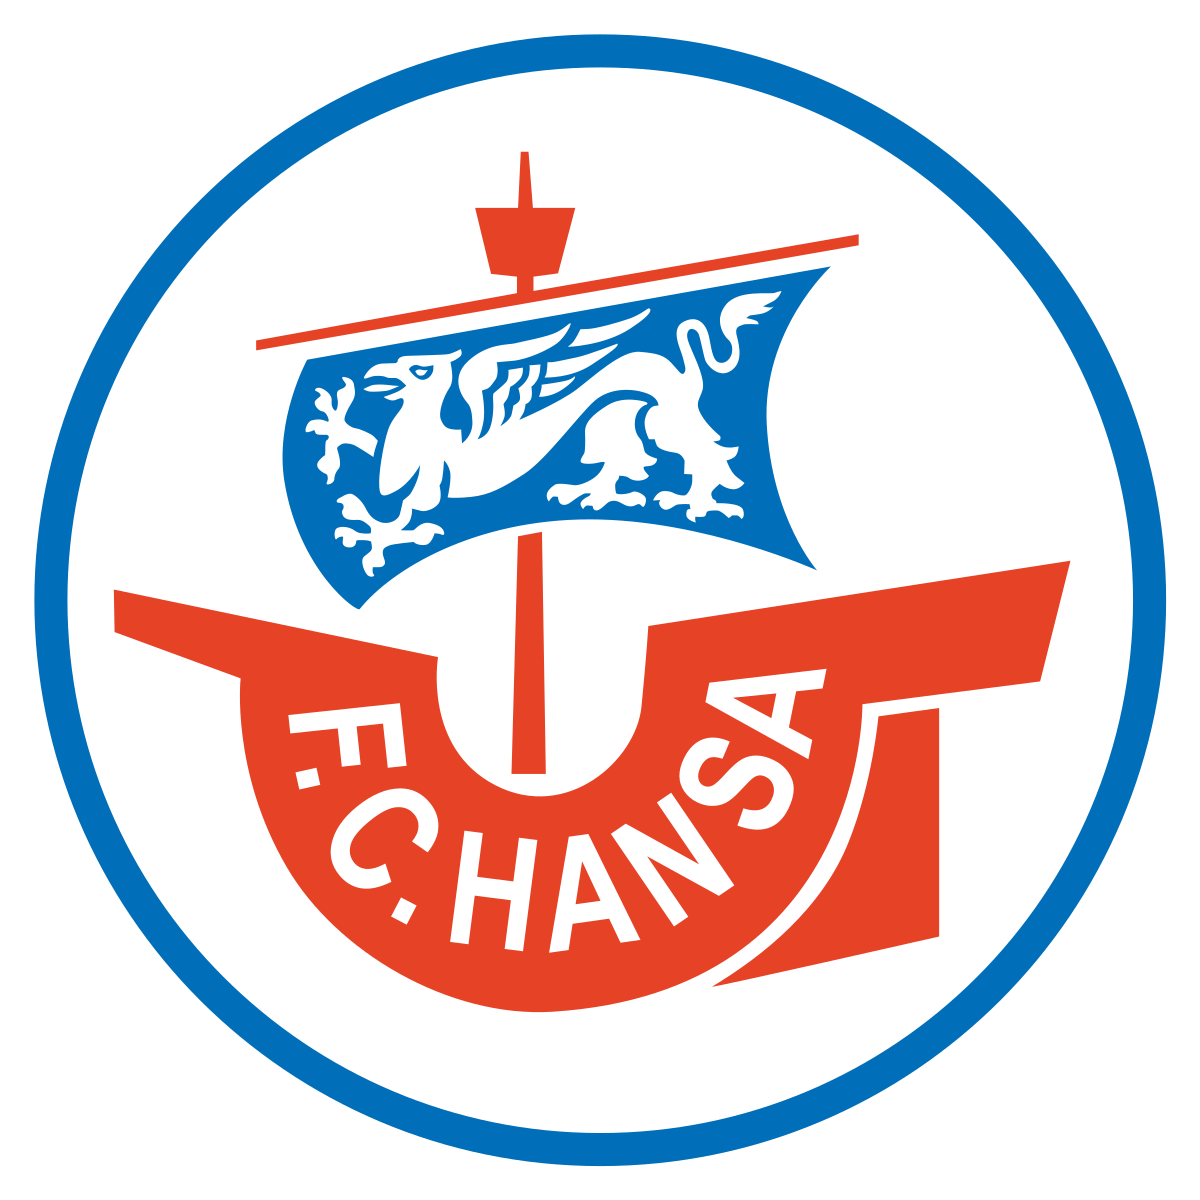 Rostocker FC